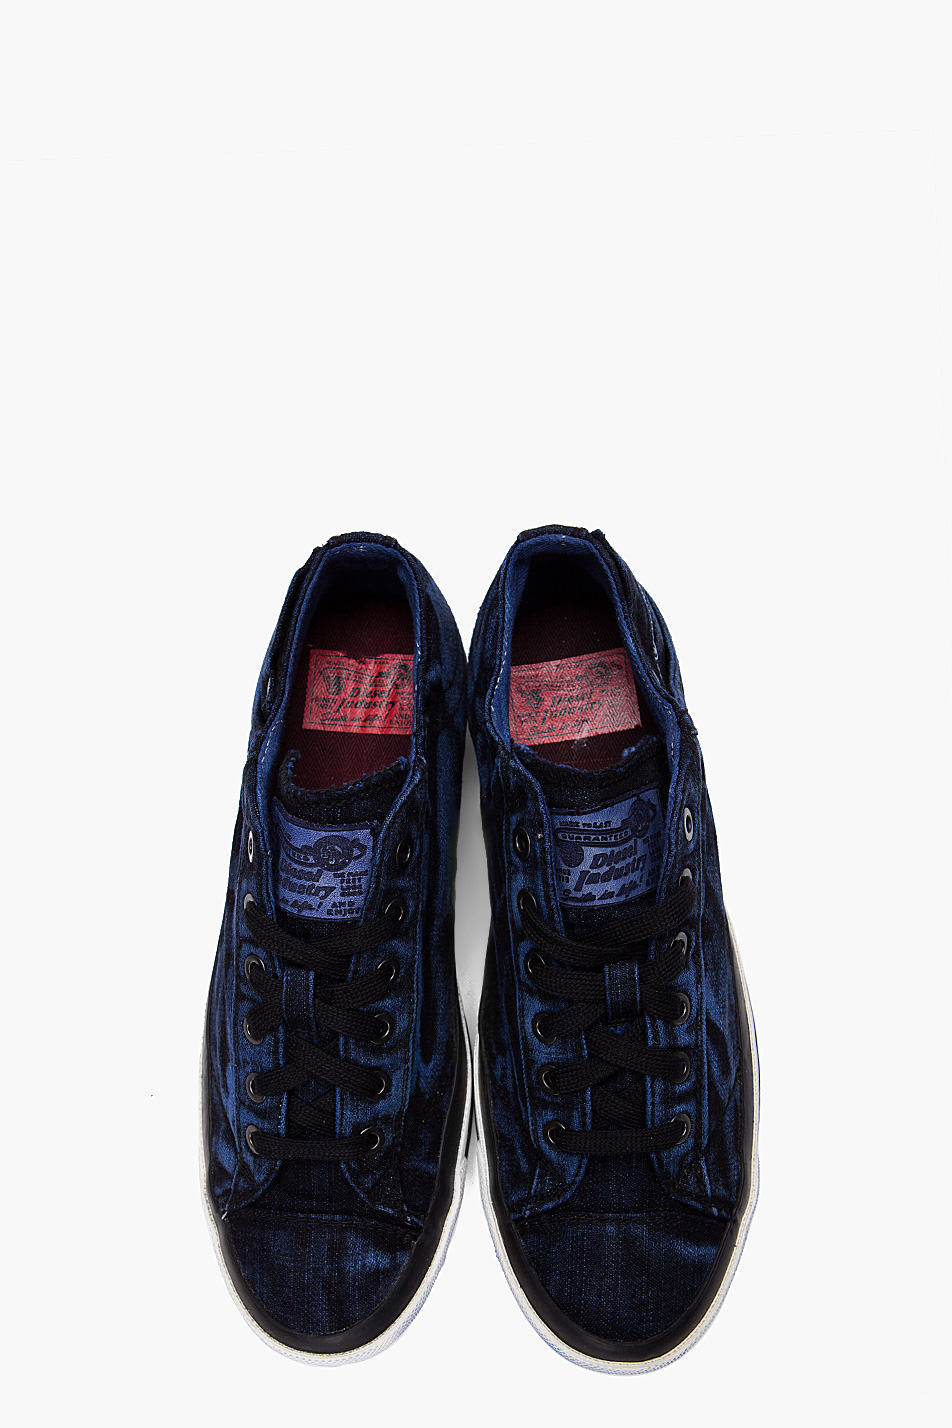 DIESEL Exposure Low I Sneakers in Denim (Blue) for Men - Lyst